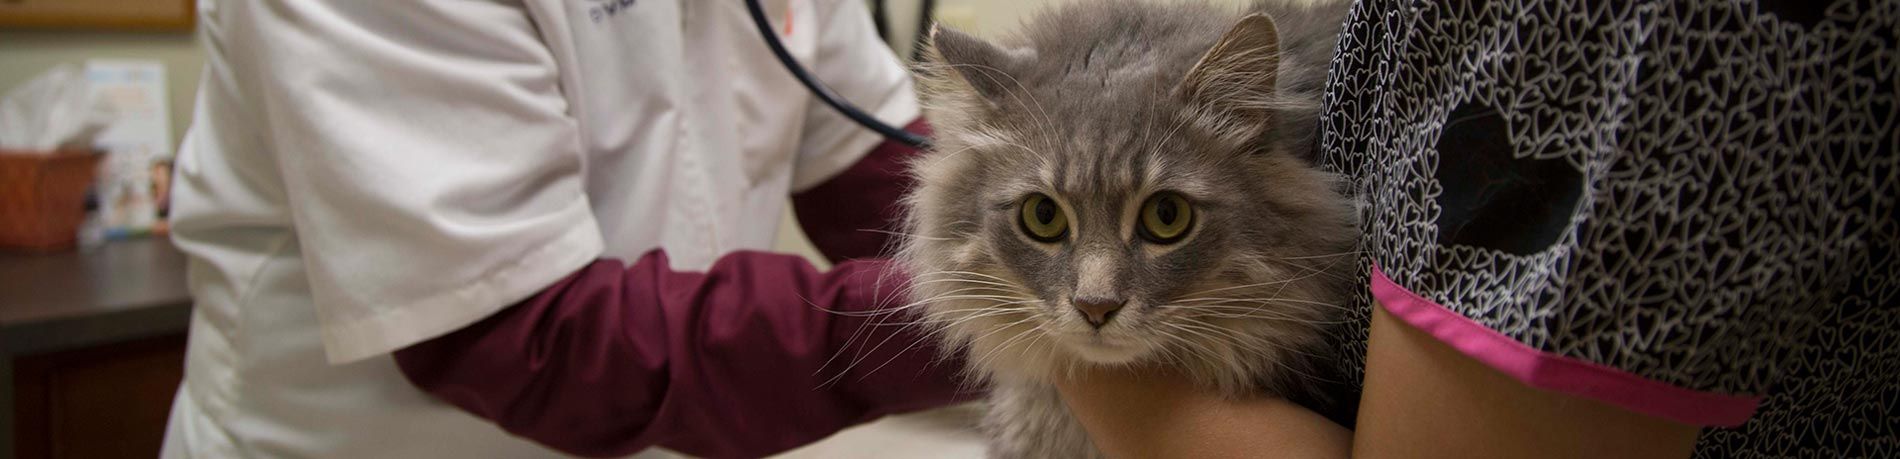 cat veterinarian checkup